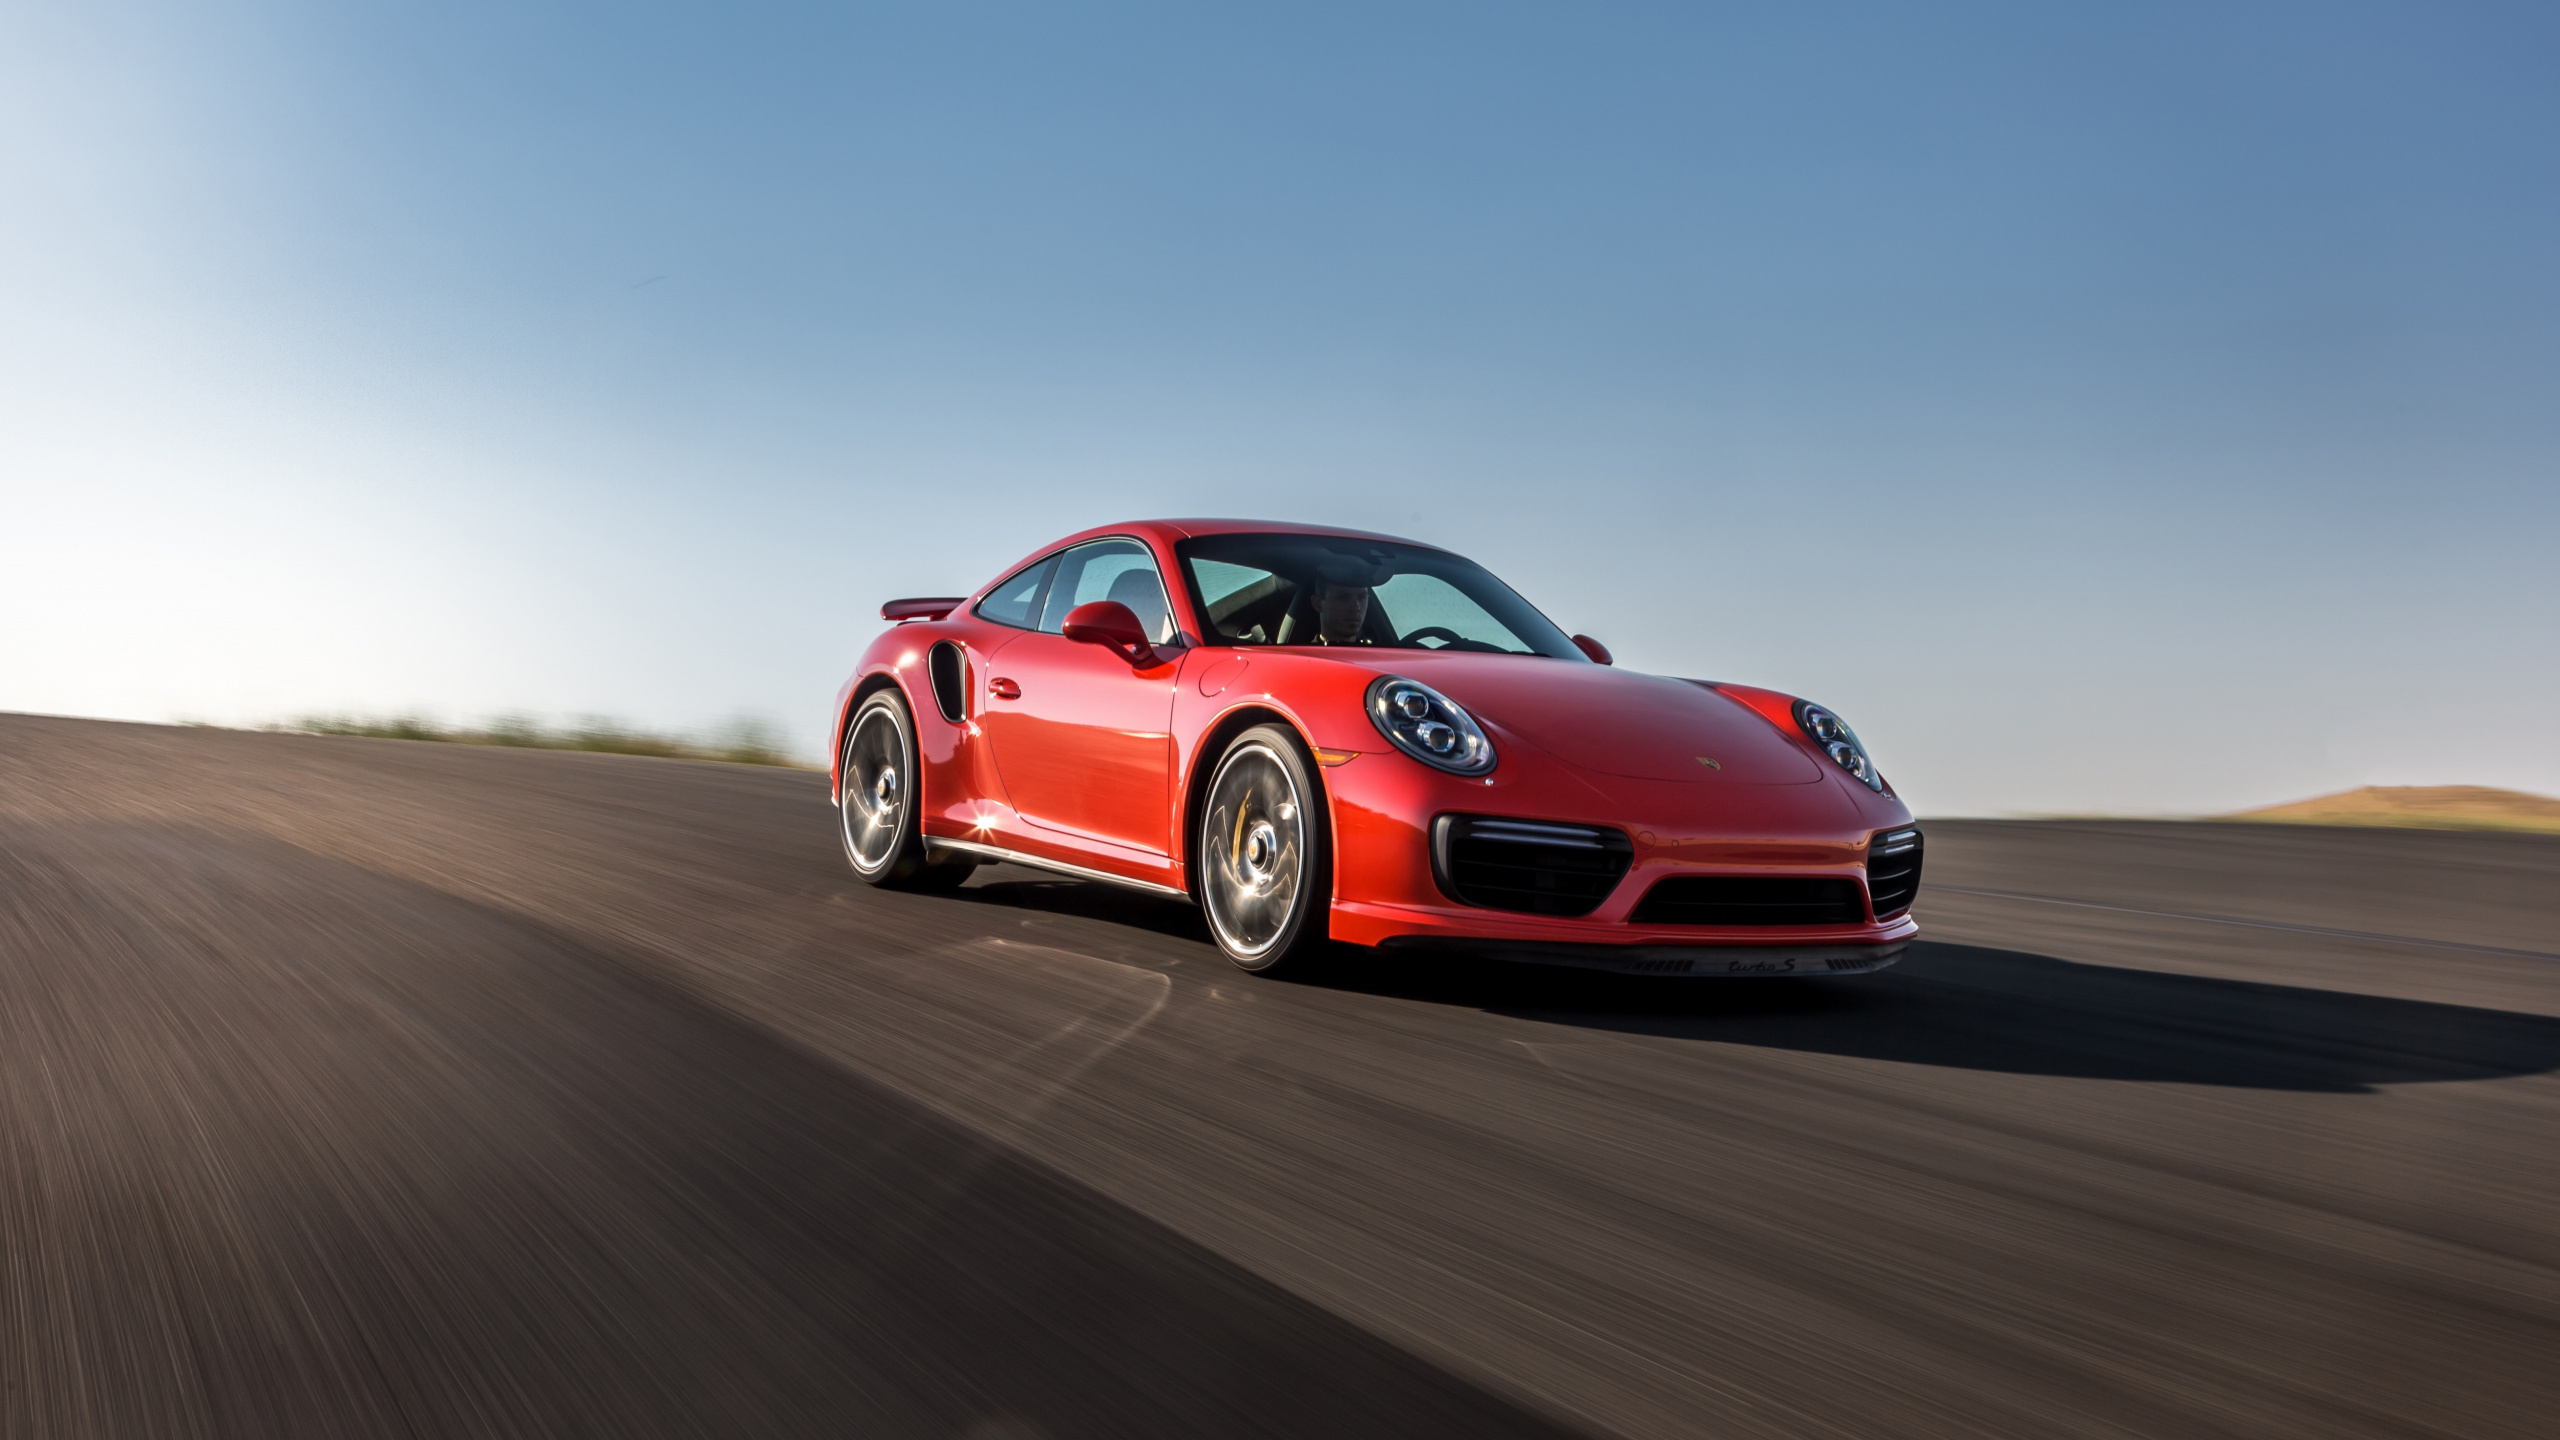 Porsche 911 Rouge Sur Route Pendant la Journée. Wallpaper in 2560x1440 Resolution